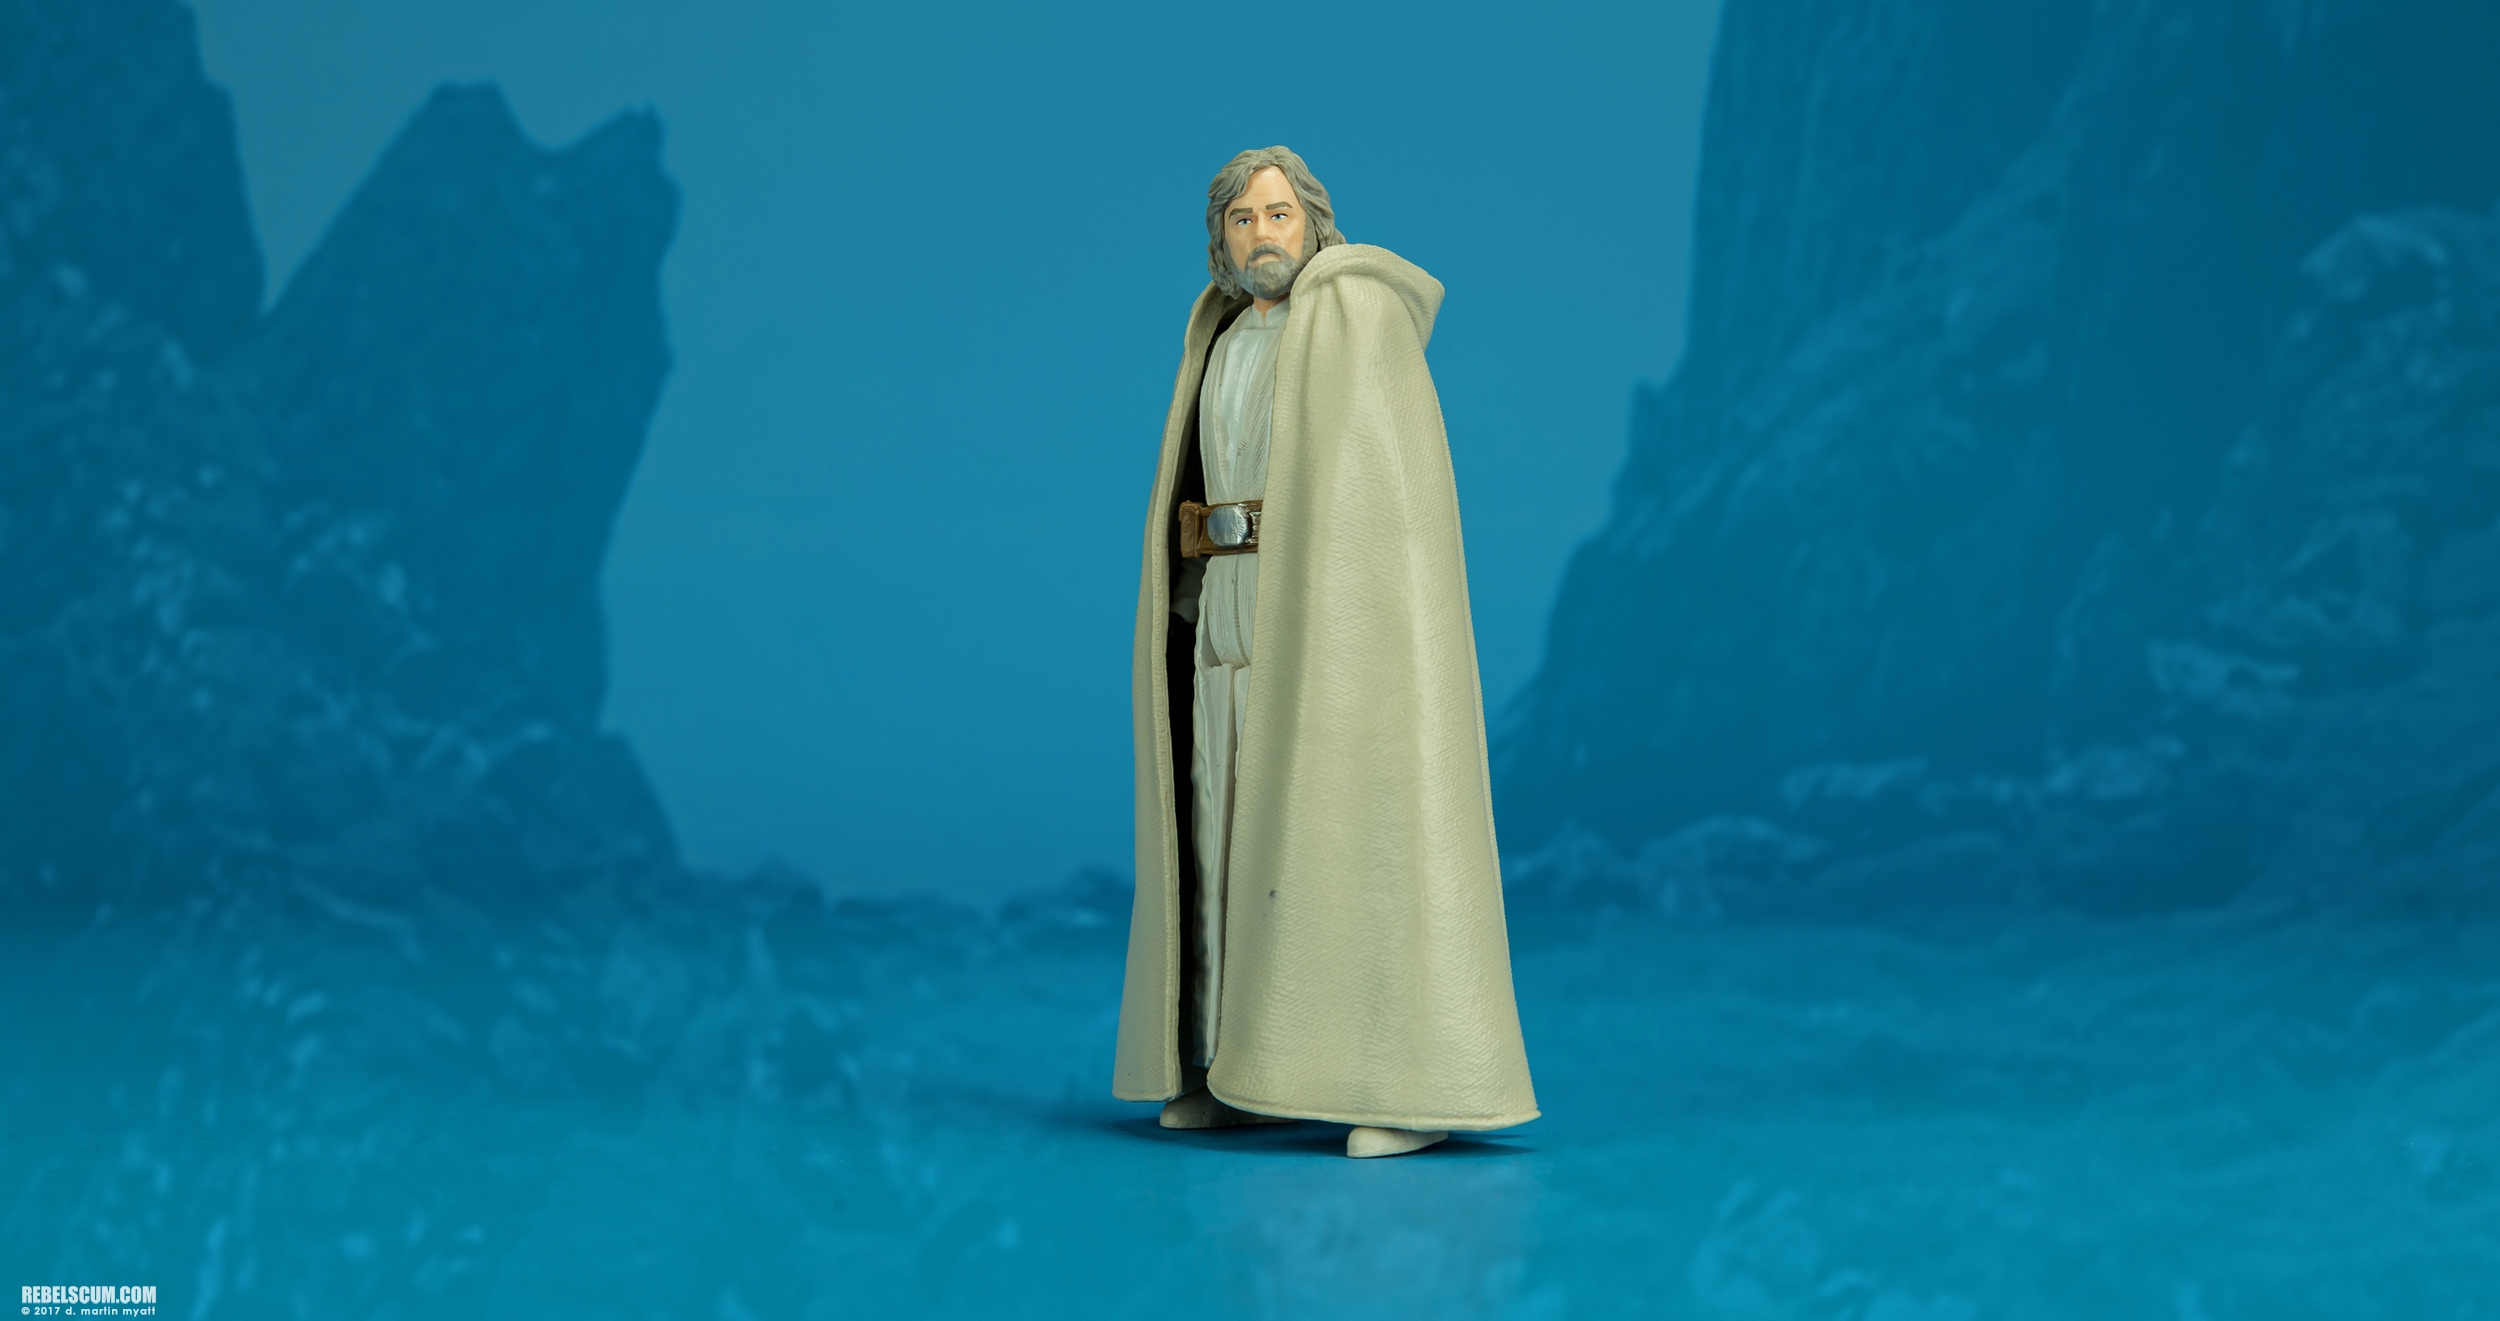 The-Last-Jedi-Star-Wars-Universe-Luke-Skywalker-Hasbro-011.jpg